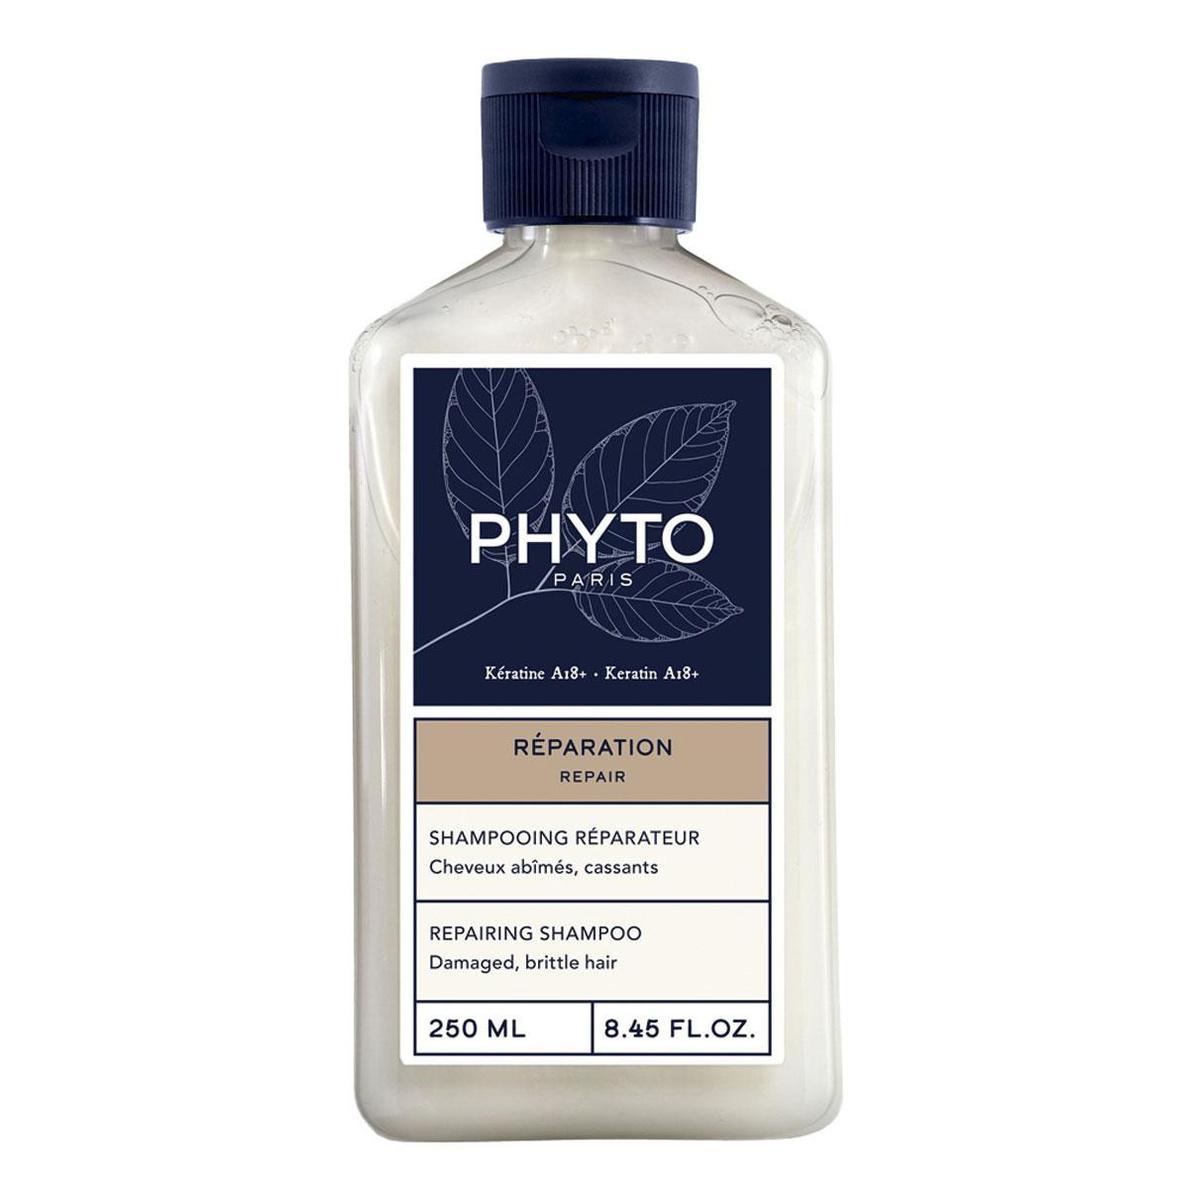 Phyto lance 4 soins réparateurs, dont ce Shampooing à l'huile de jojoba, idéal pour cheveux secs (13,90 ? 250 ml). En (para)pharmacie.